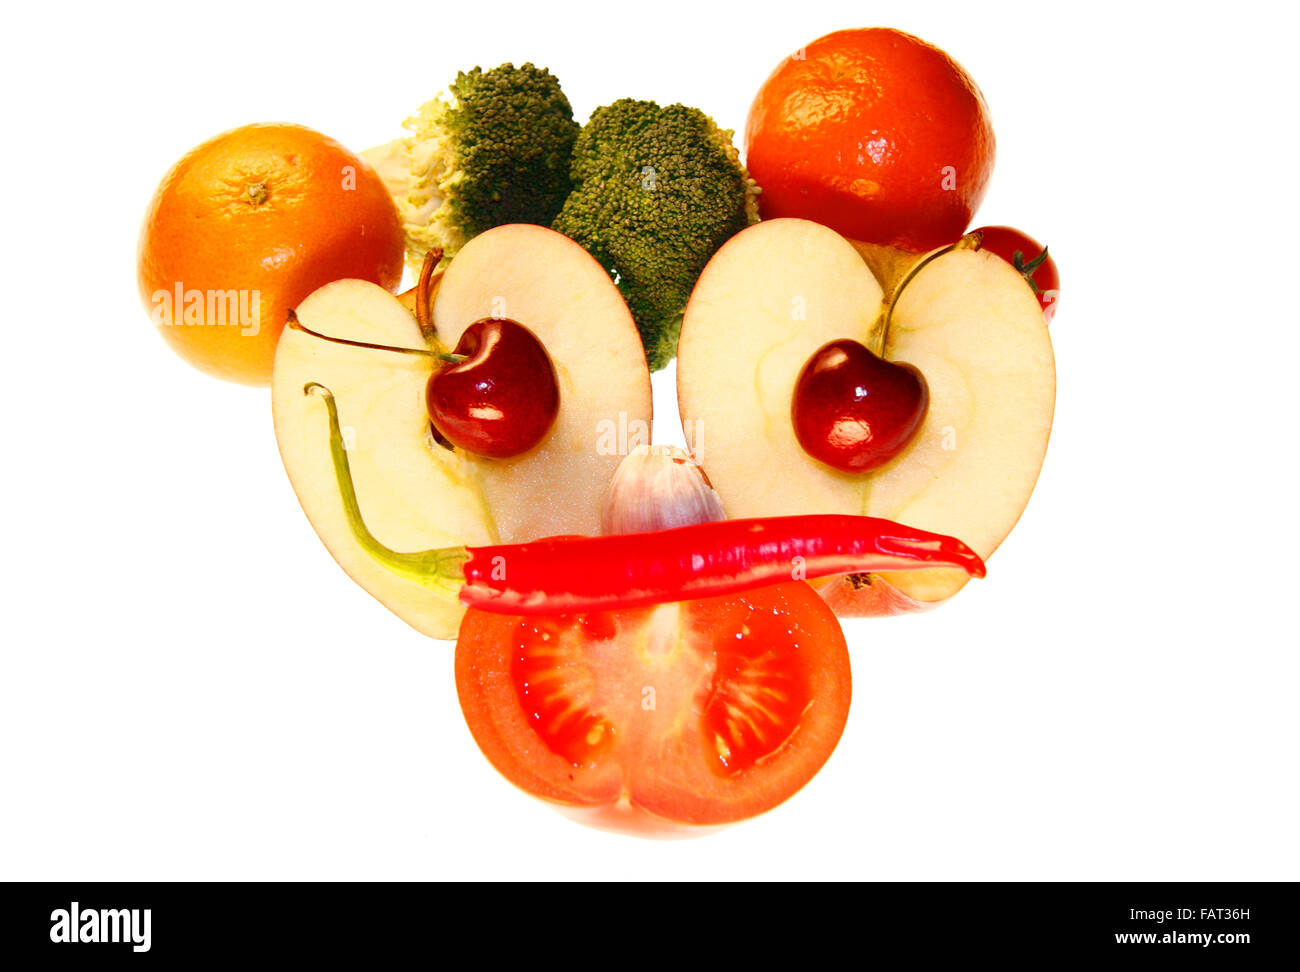 Gesicht/ face: Brokkoli, Clementinen, Knoblauch, Kirschen, Apfel, Tomate, Chilly - Symbolbild Nahrungsmittel. Stock Photo